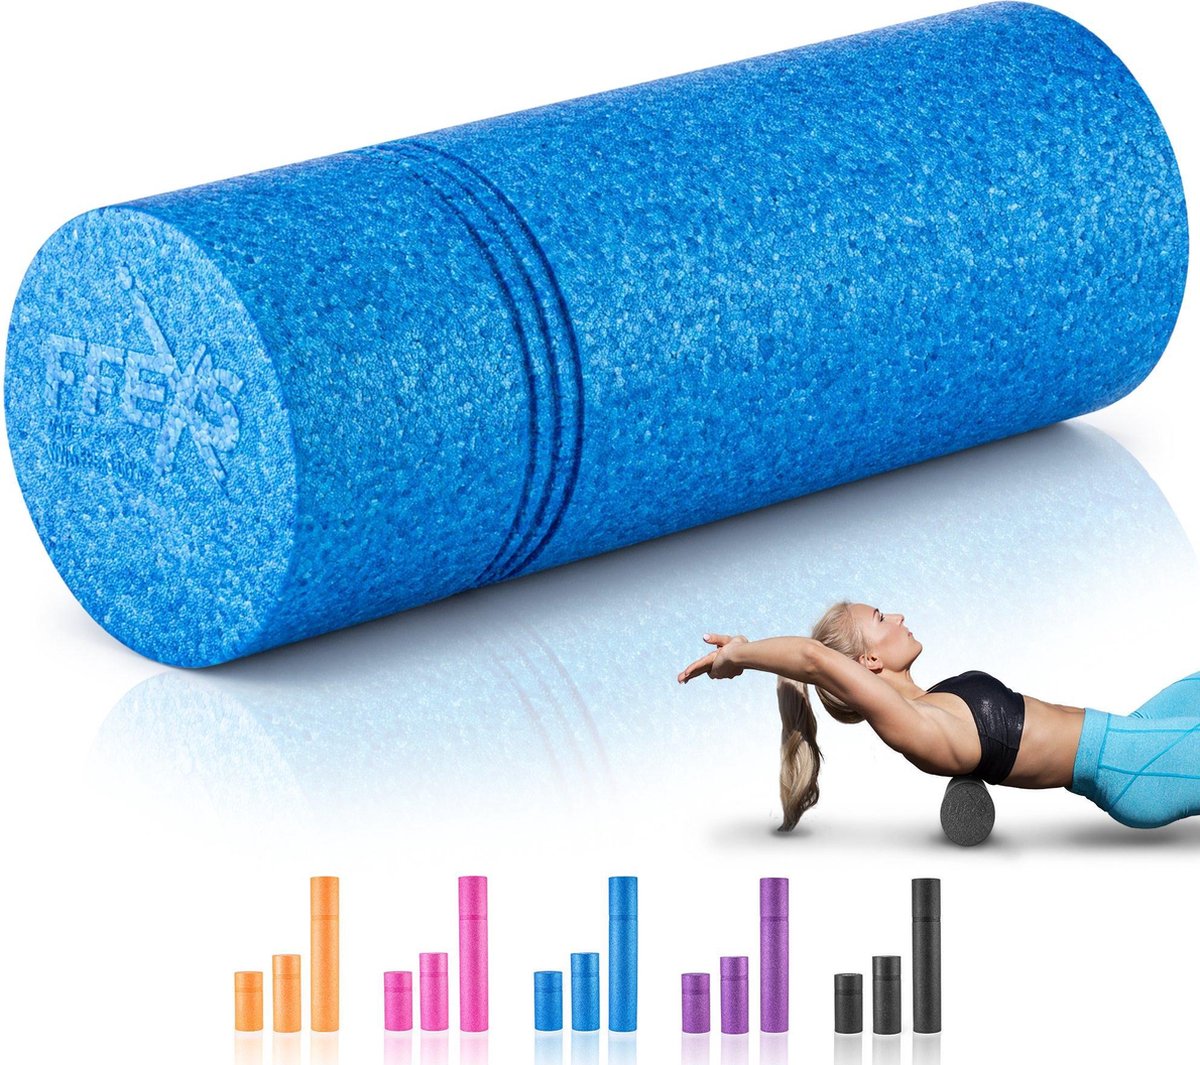 FFEXS Foam Roller - Therapie & Massage voor rug benen kuiten billen dijen - Perfecte zelfmassage voor sport fitness [Hard] - 40 CM - Blauw - FX FFEXS